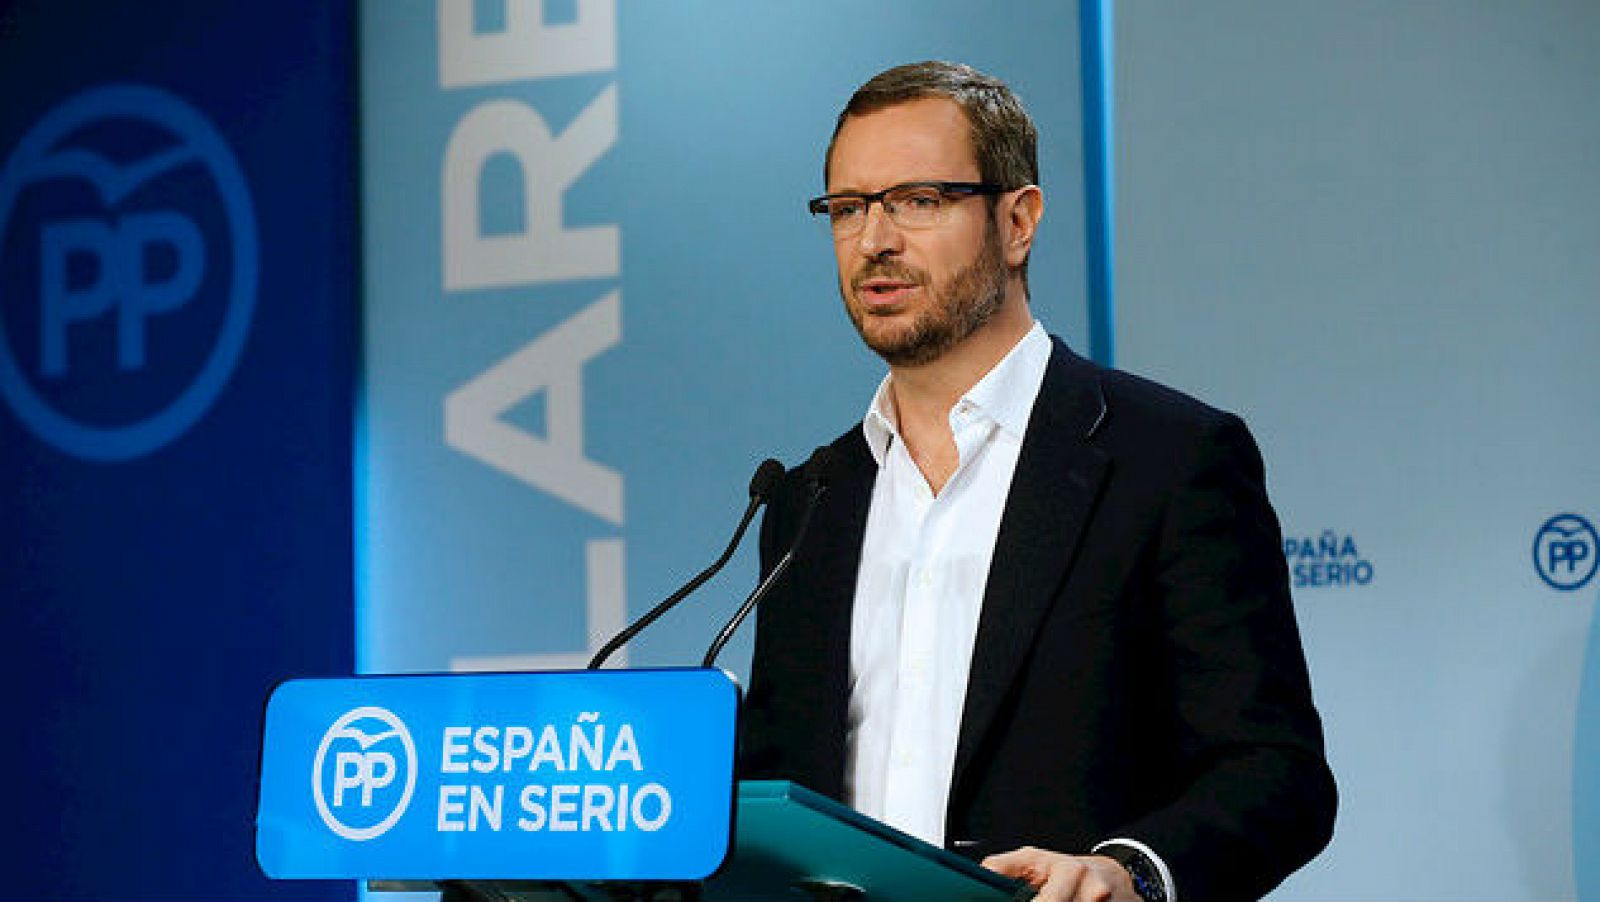 Las mañanas de RNE - Javier Maroto PP: "Pedro Sánchez o falta a la verdad o está abocado al fracaso" - Escuchar ahora